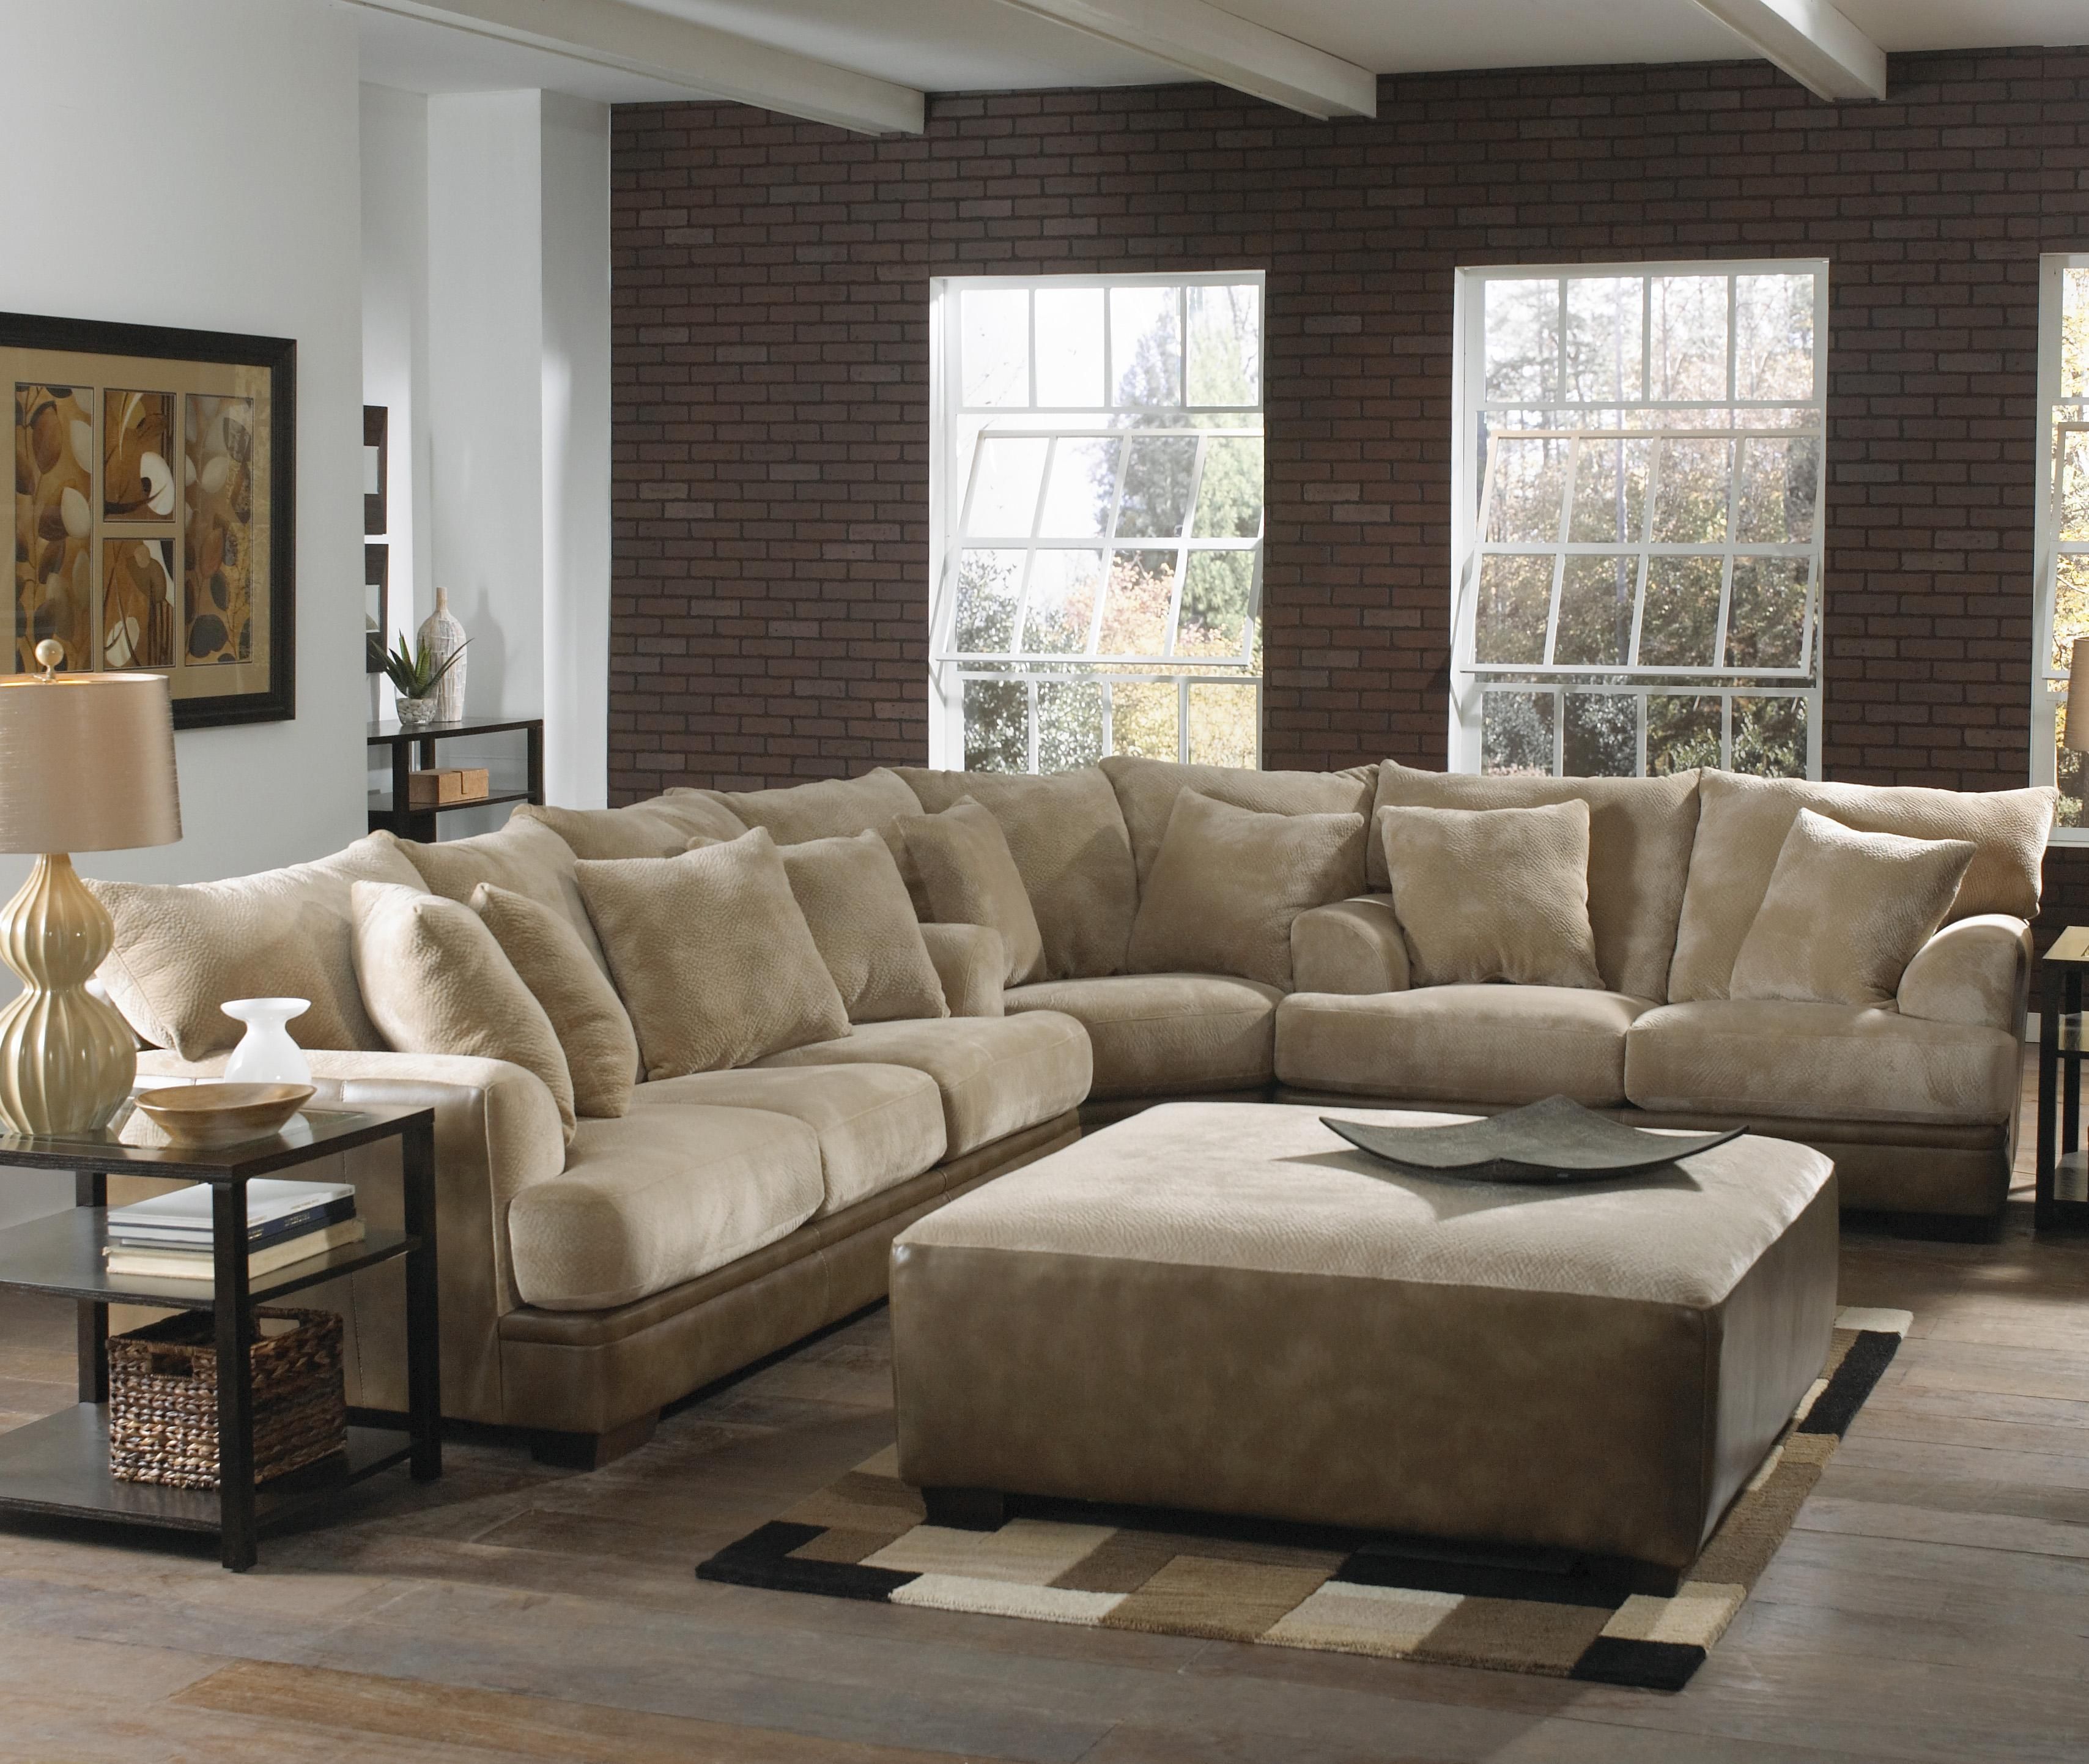 European Style Sectional Sofas Sofa Menzilperde Regarding European Style Sectional Sofas (View 10 of 12)